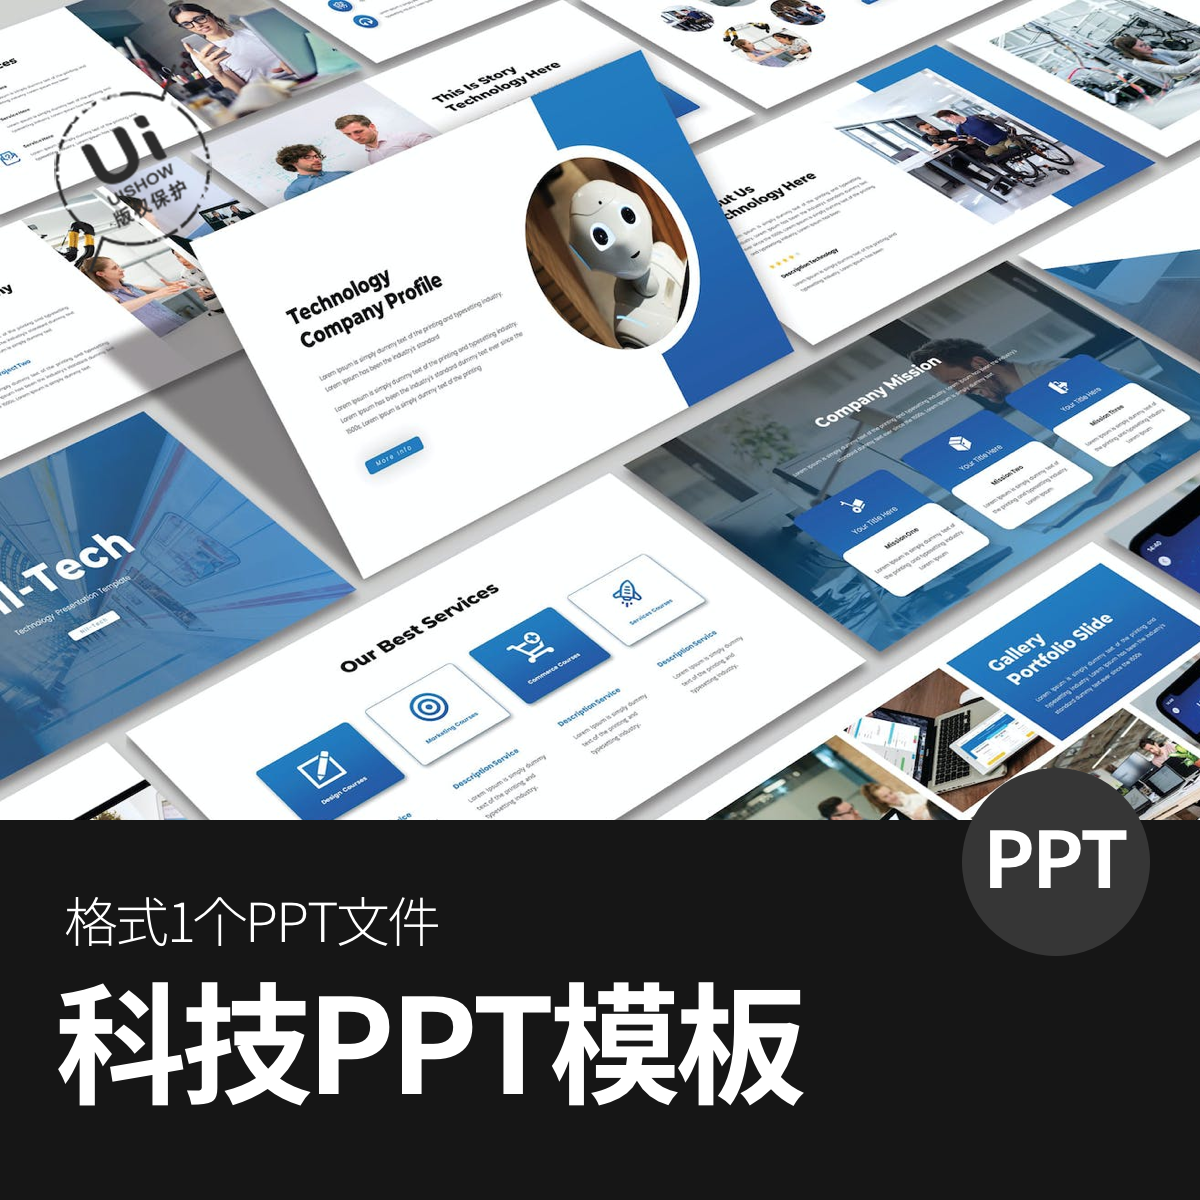 科技企业公司蓝色背景高级高端策划销售方案应用PPT设计模板素材